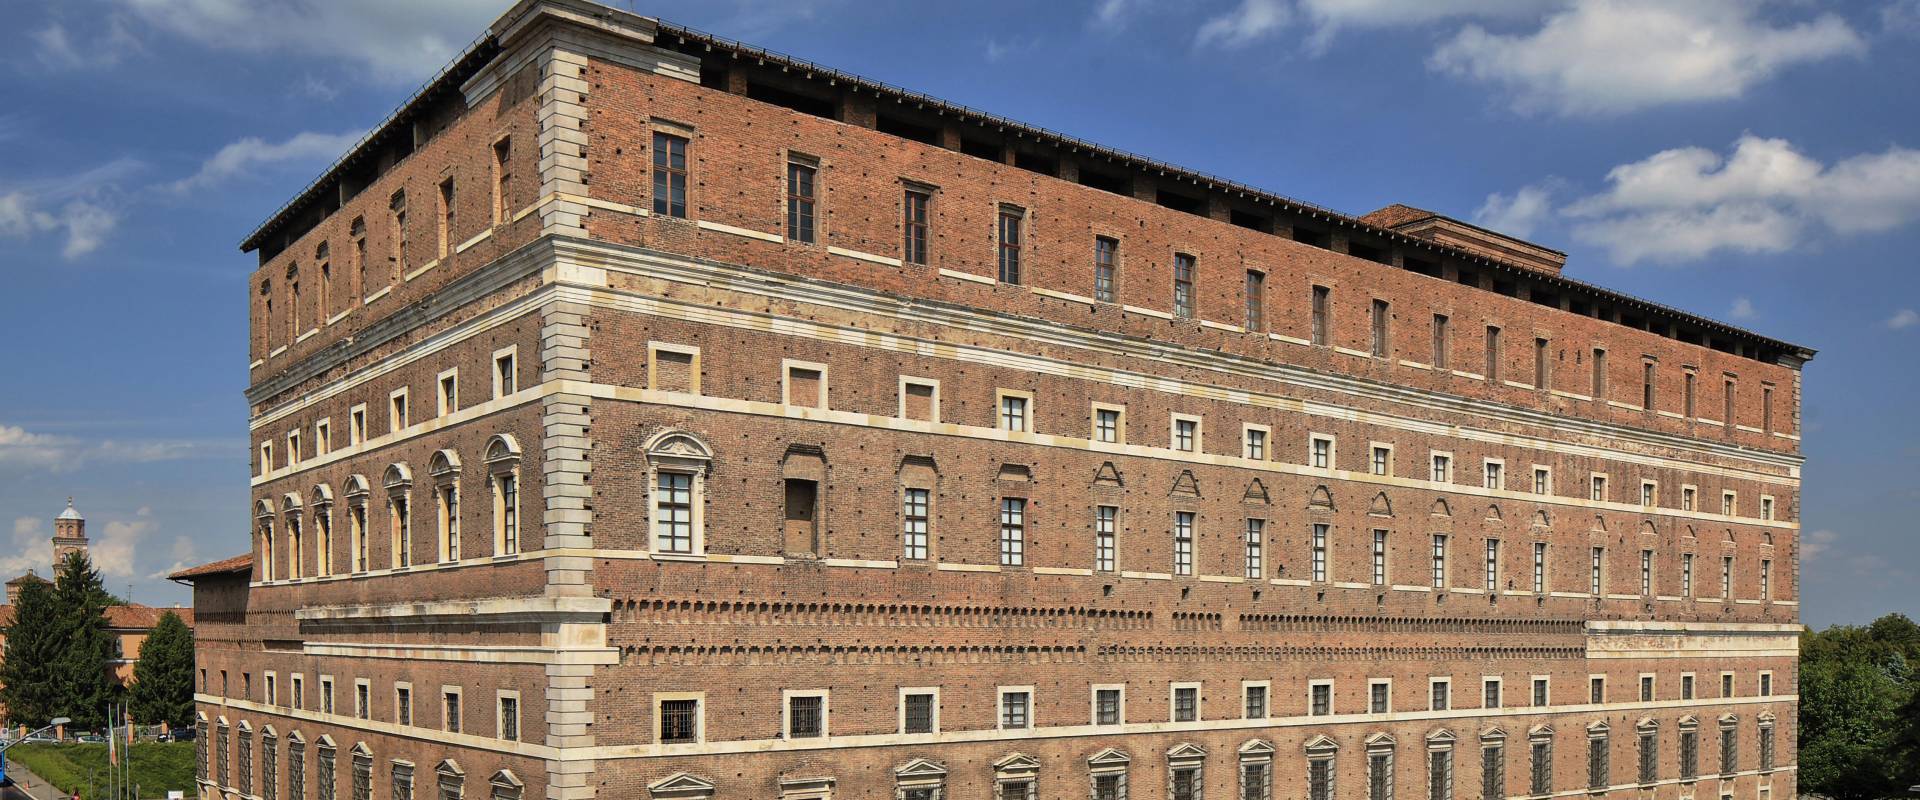 Palazzo Farnese - Piacenza photo by foto Pagani